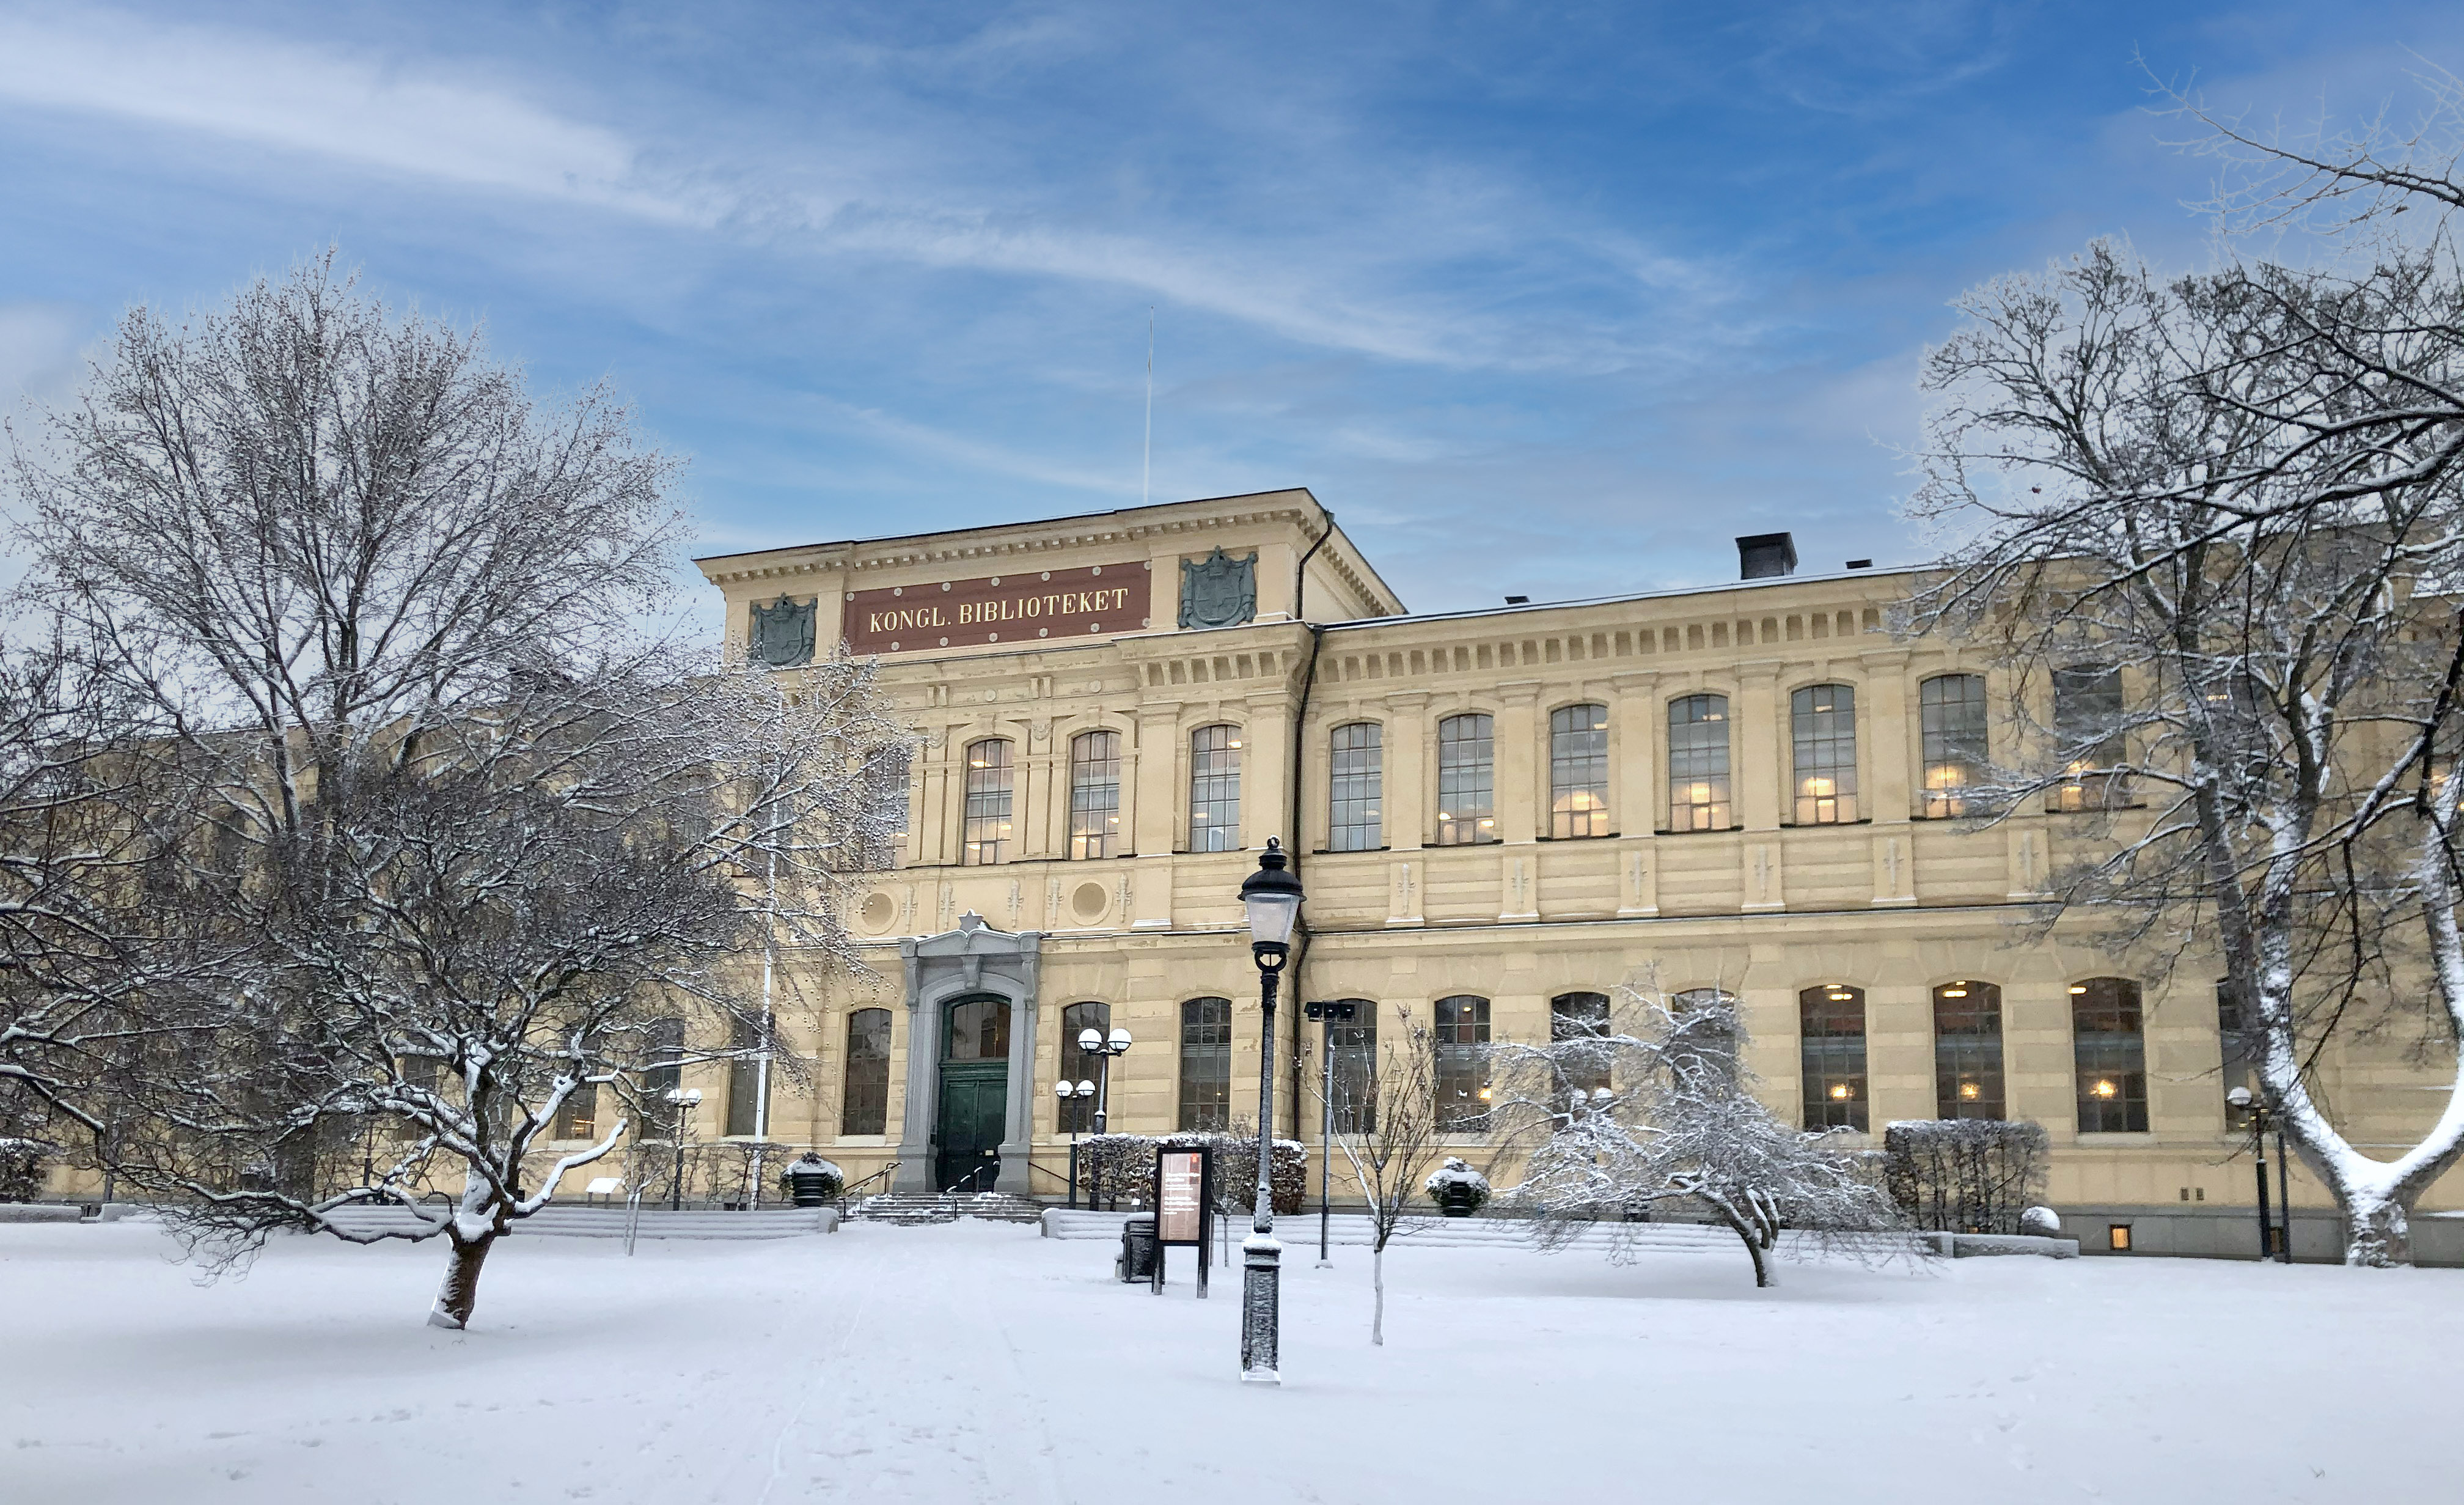 Kungliga bibliotekets gula tegelbyggnad i en snöklädd park.